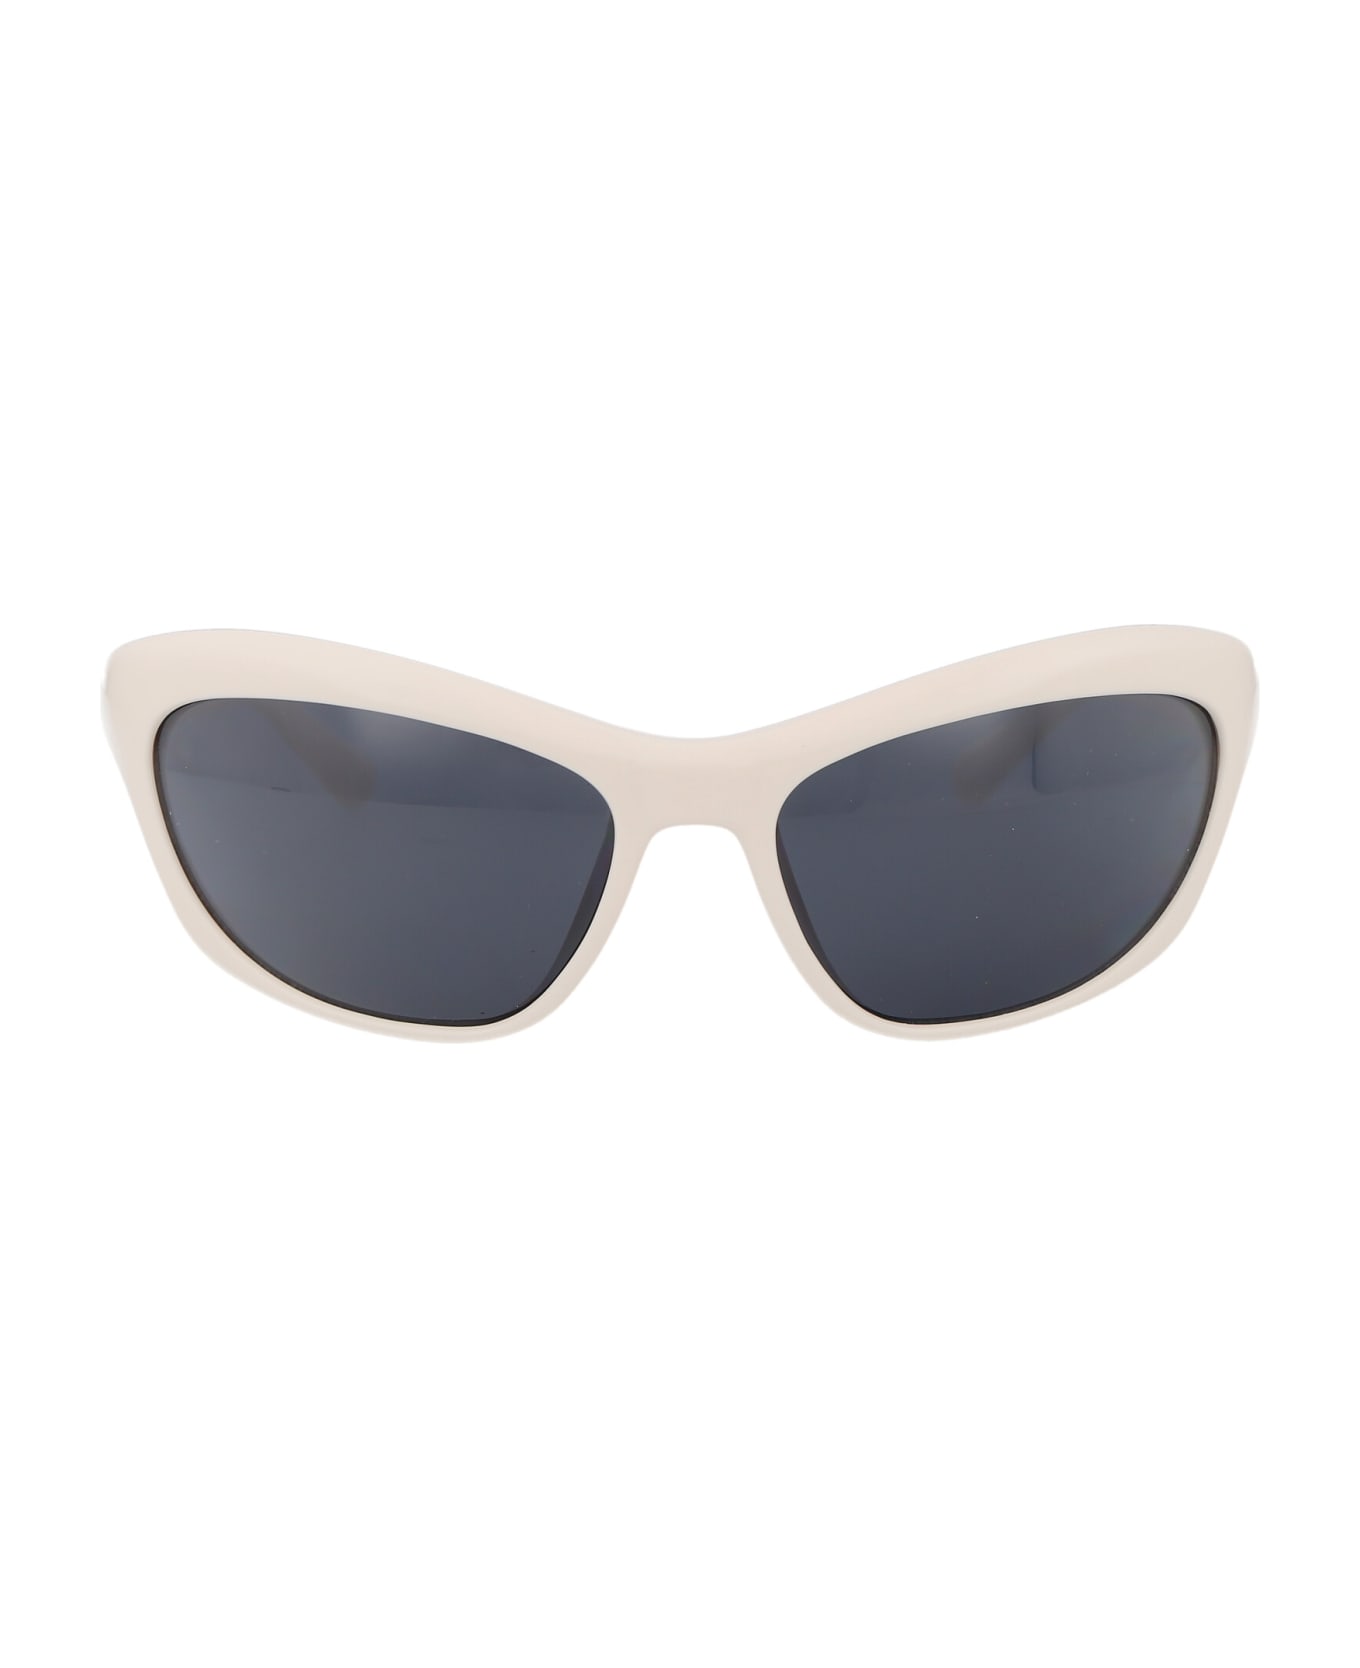 Chiara Ferragni Cf 7030/s Sunglasses - VK6IR WHITE